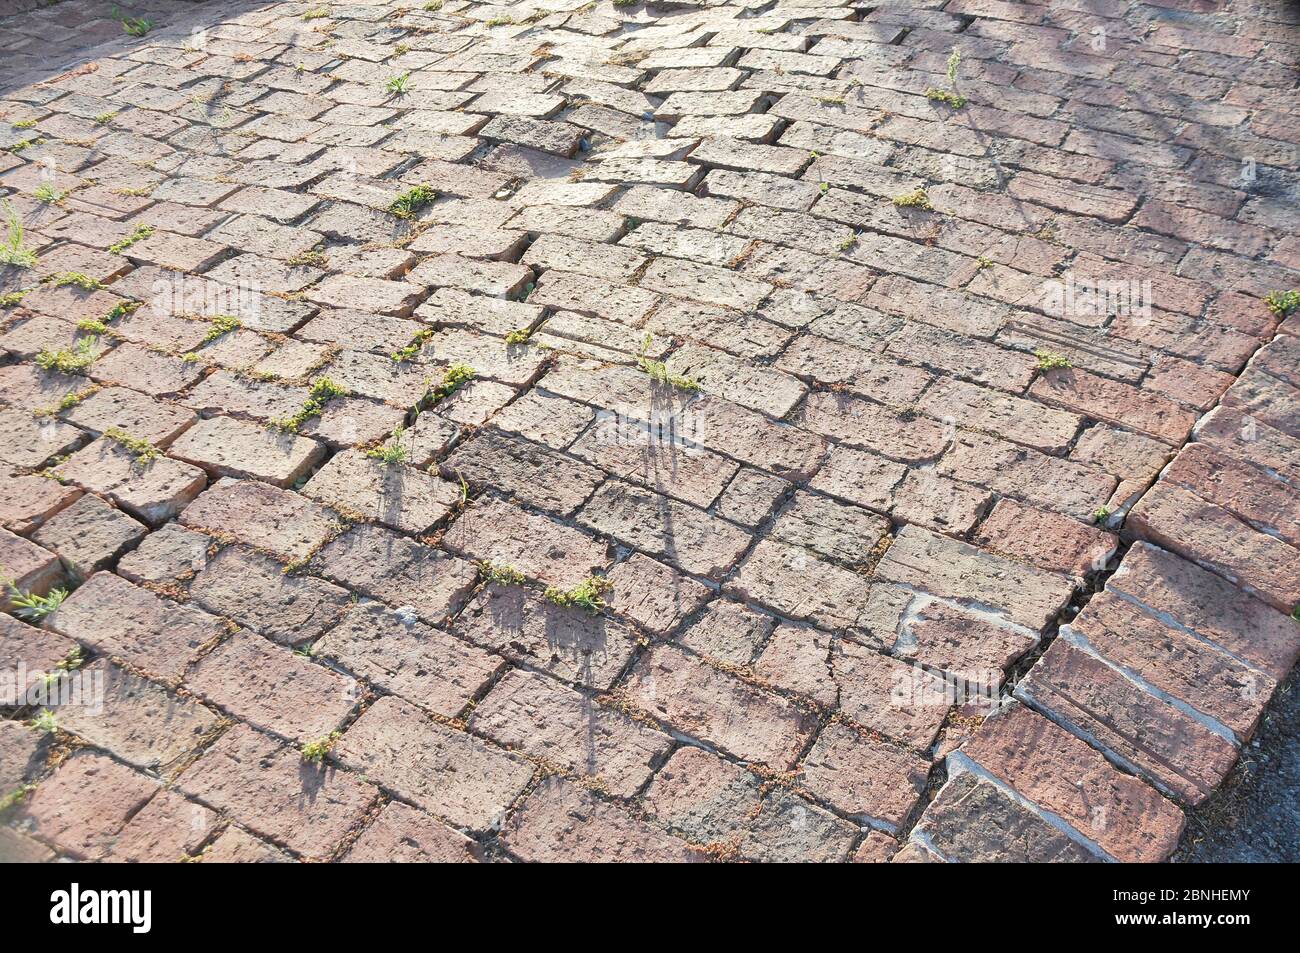 Pavimentazione in mattoni rossi non uniforme cedevole o cedevole su terreno instabile Foto Stock